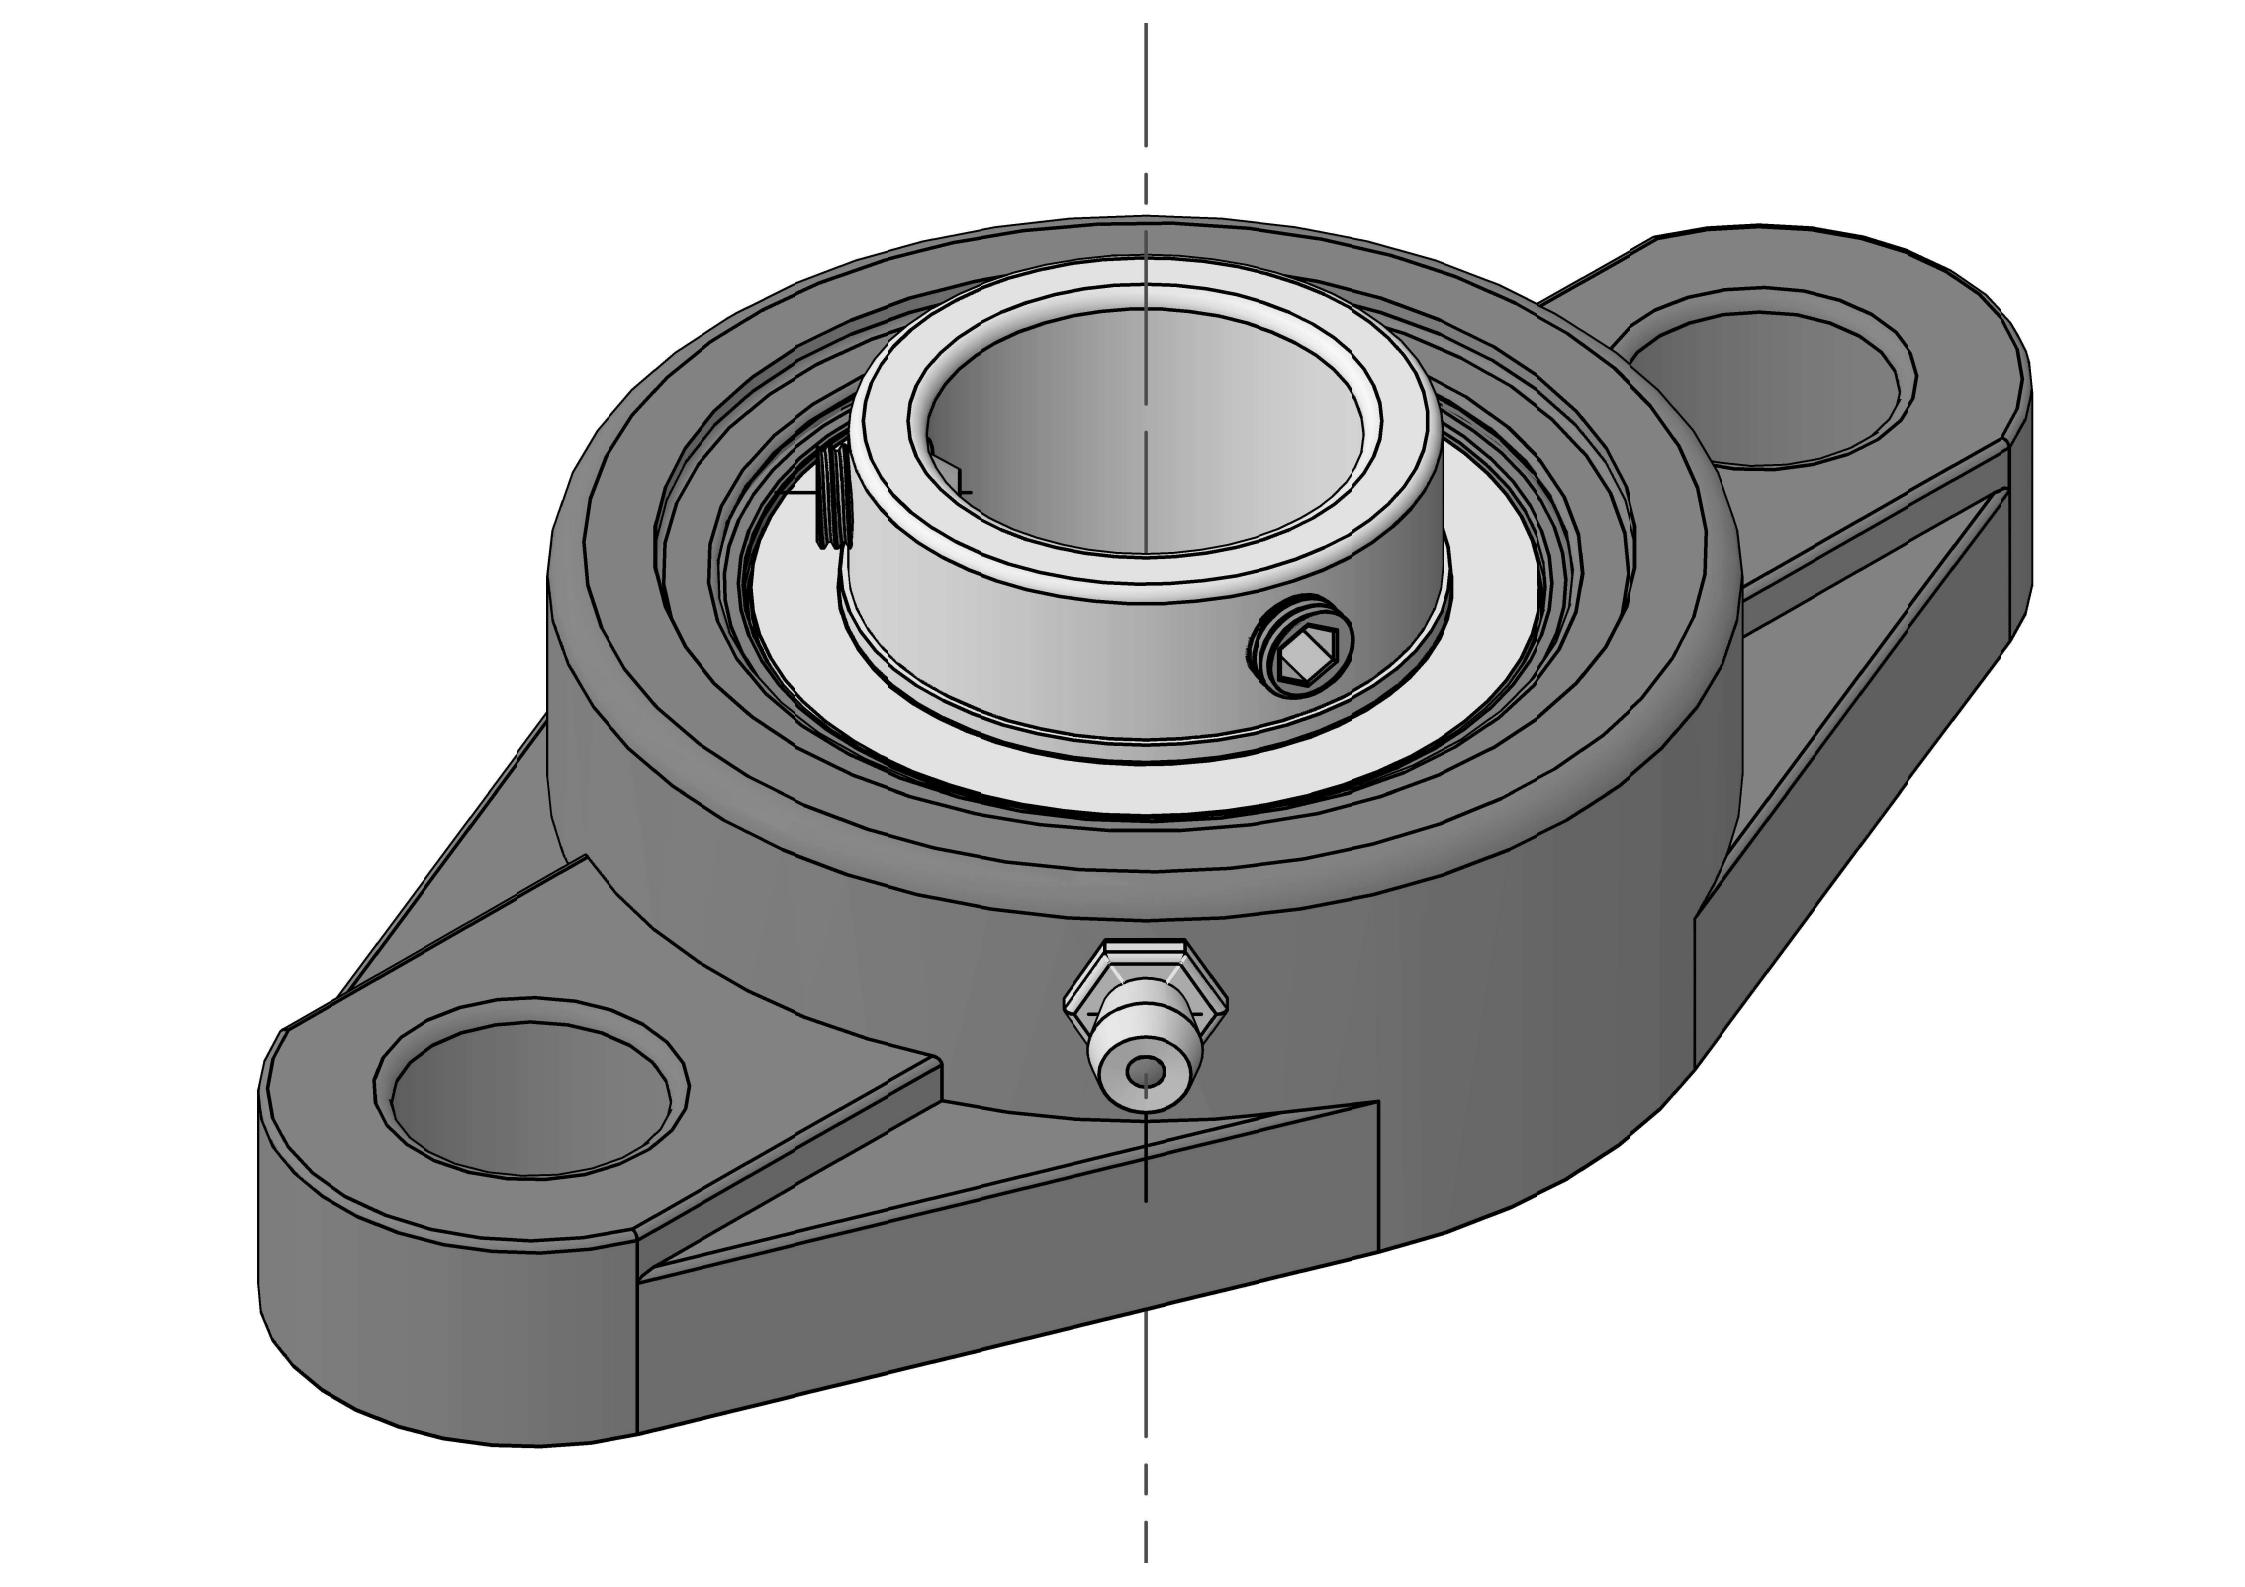 UCFL314 Ležajne jedinice s dva vijka i ovalnom prirubnicom s provrtom od 70 mm